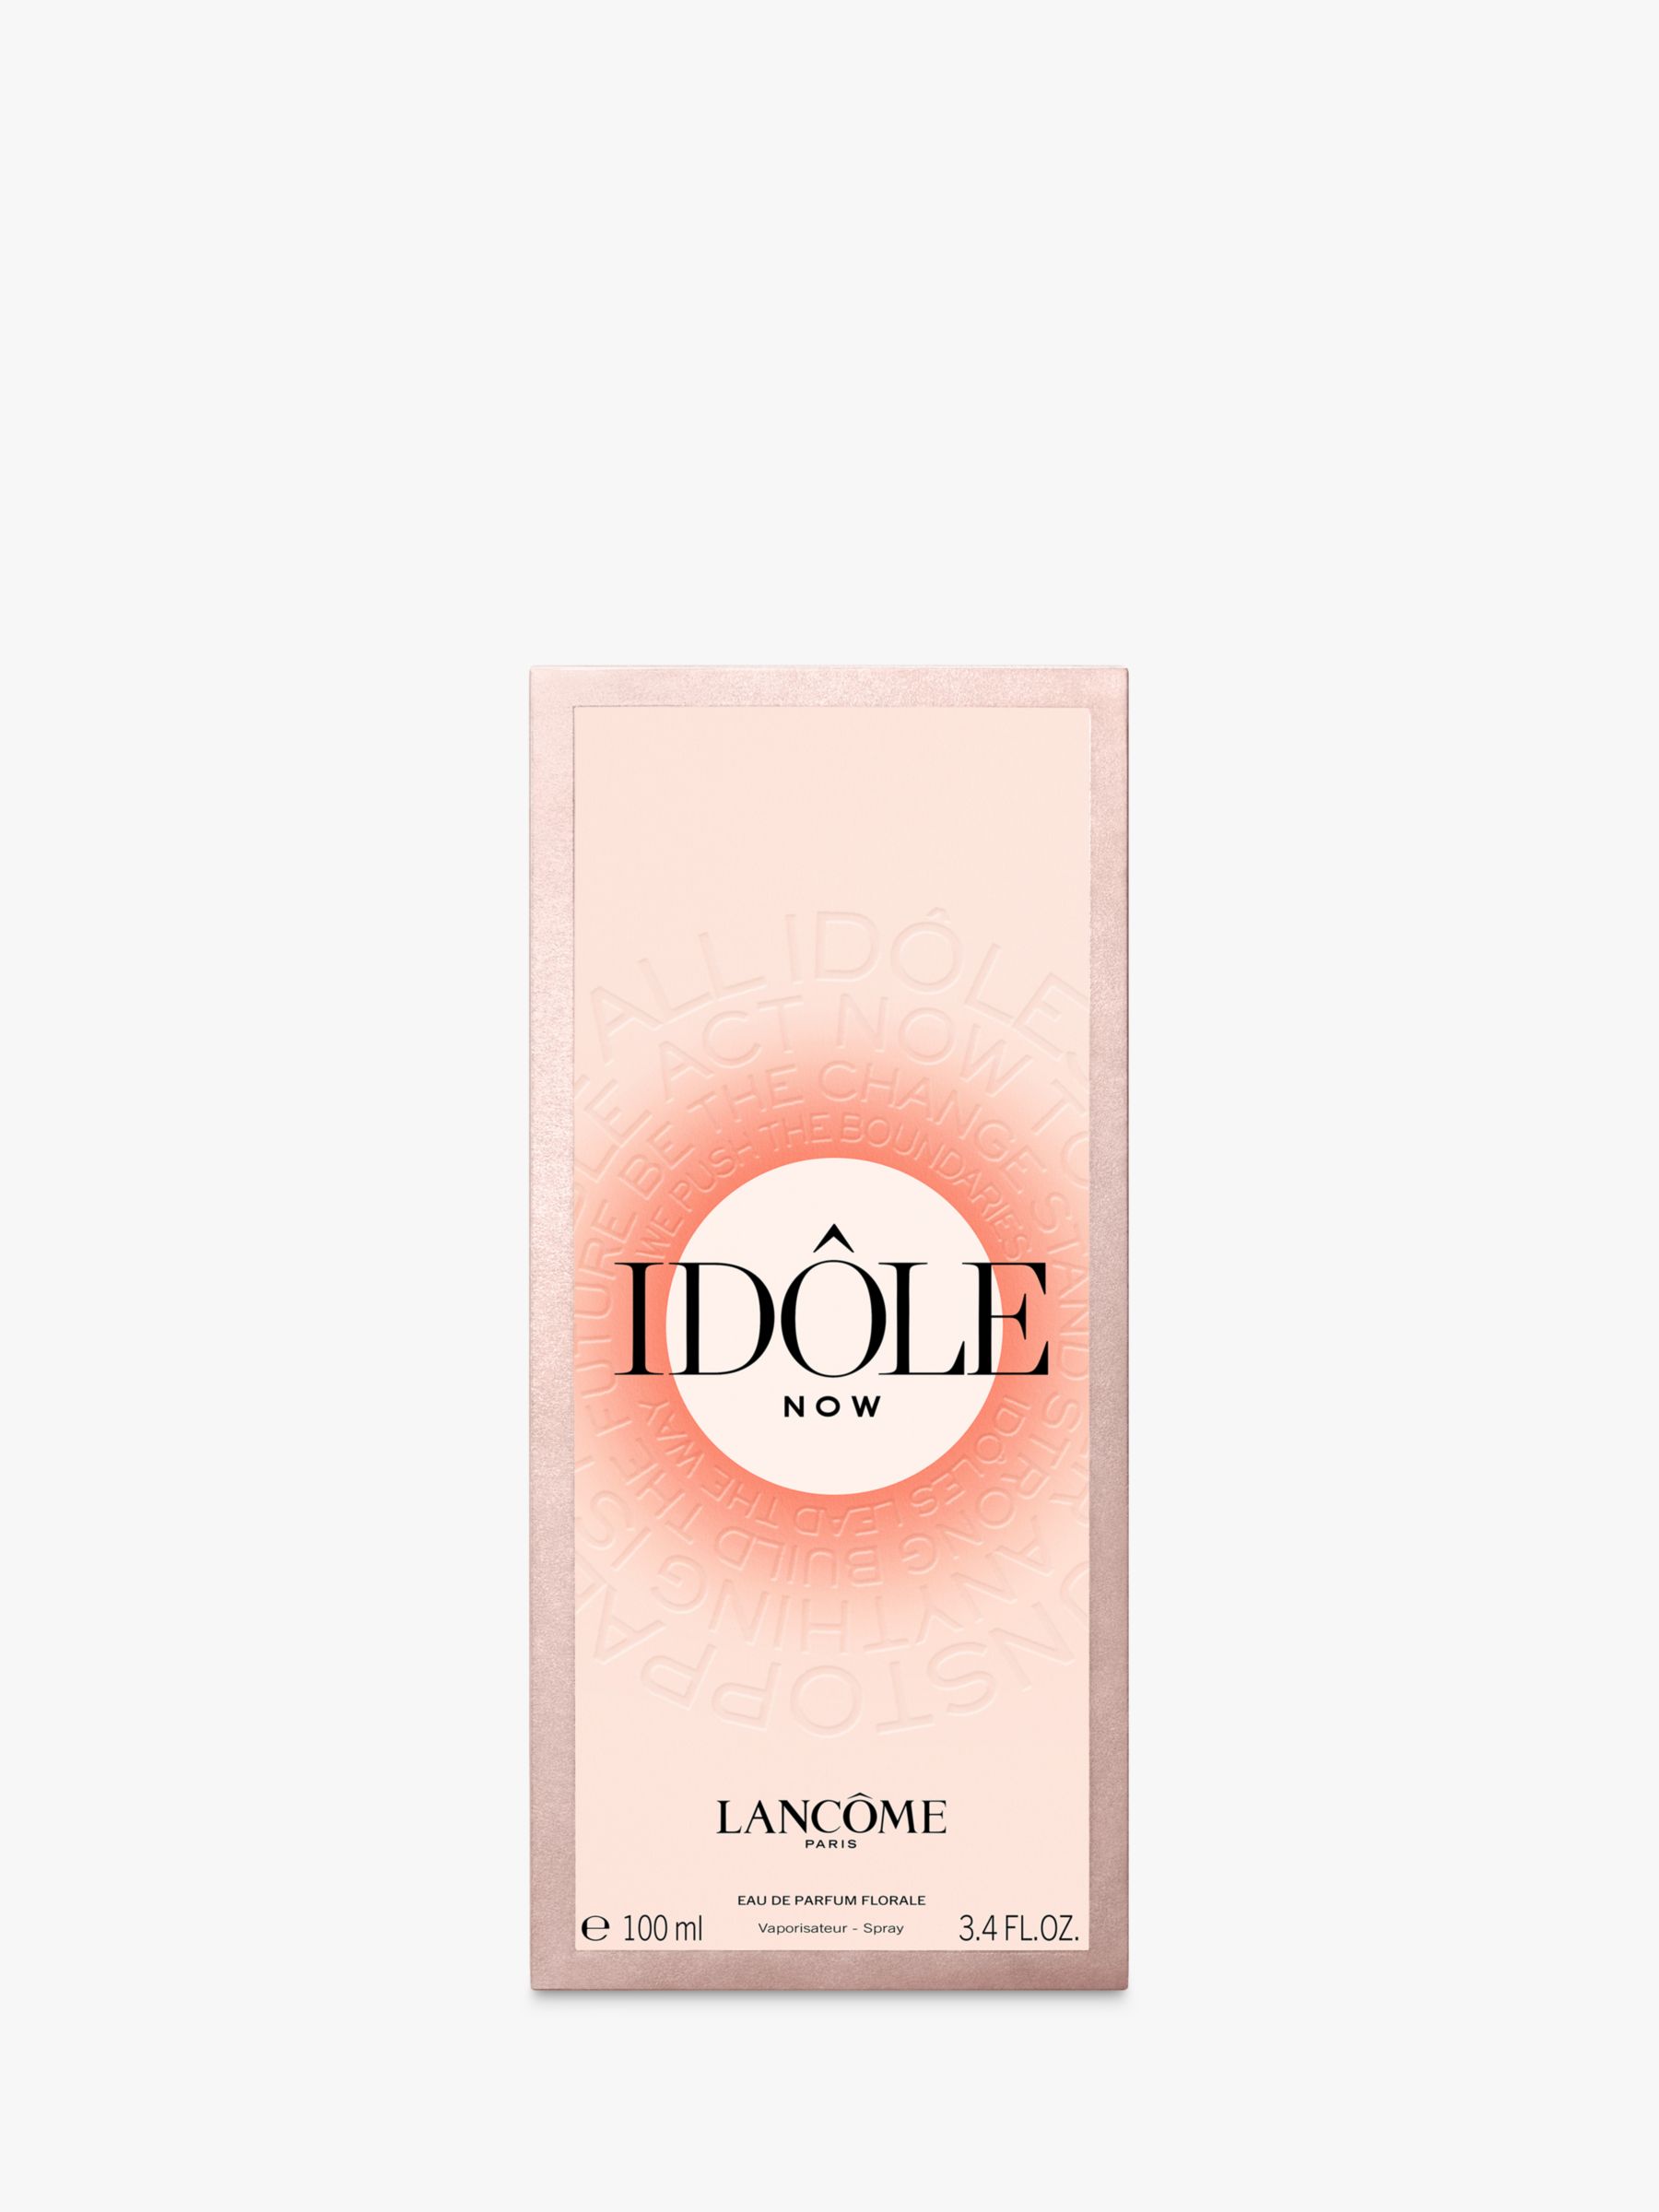 Lancôme Idôle Now Eau de Parfum, 100ml